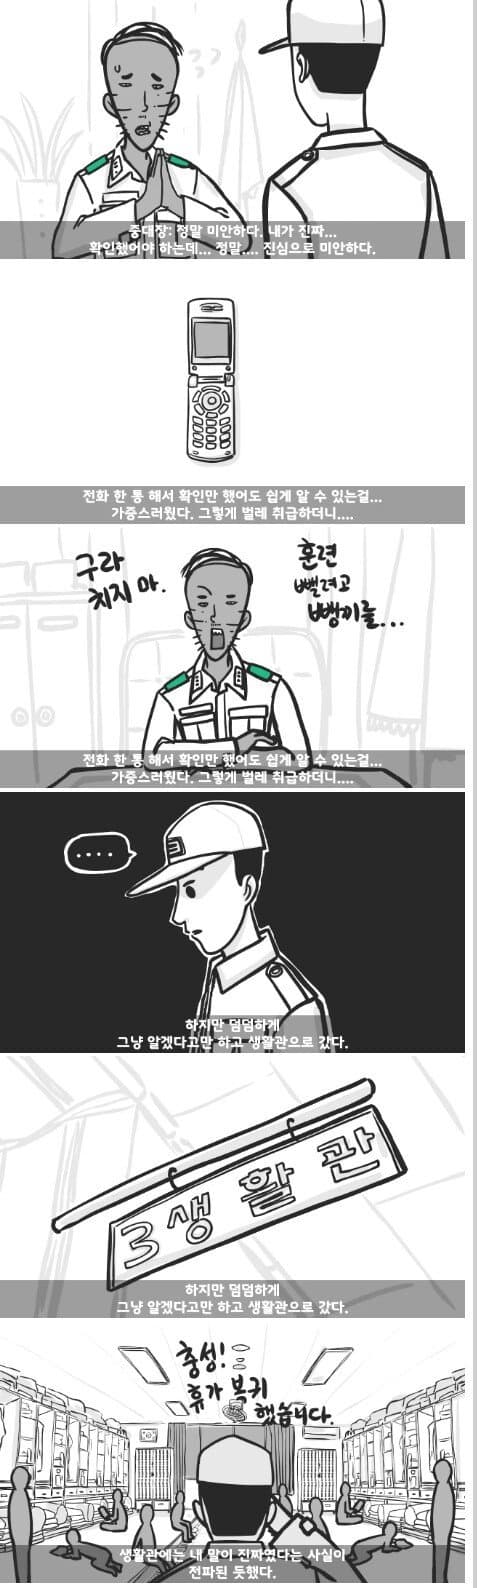 군대 4스타인 만화 17.jpg